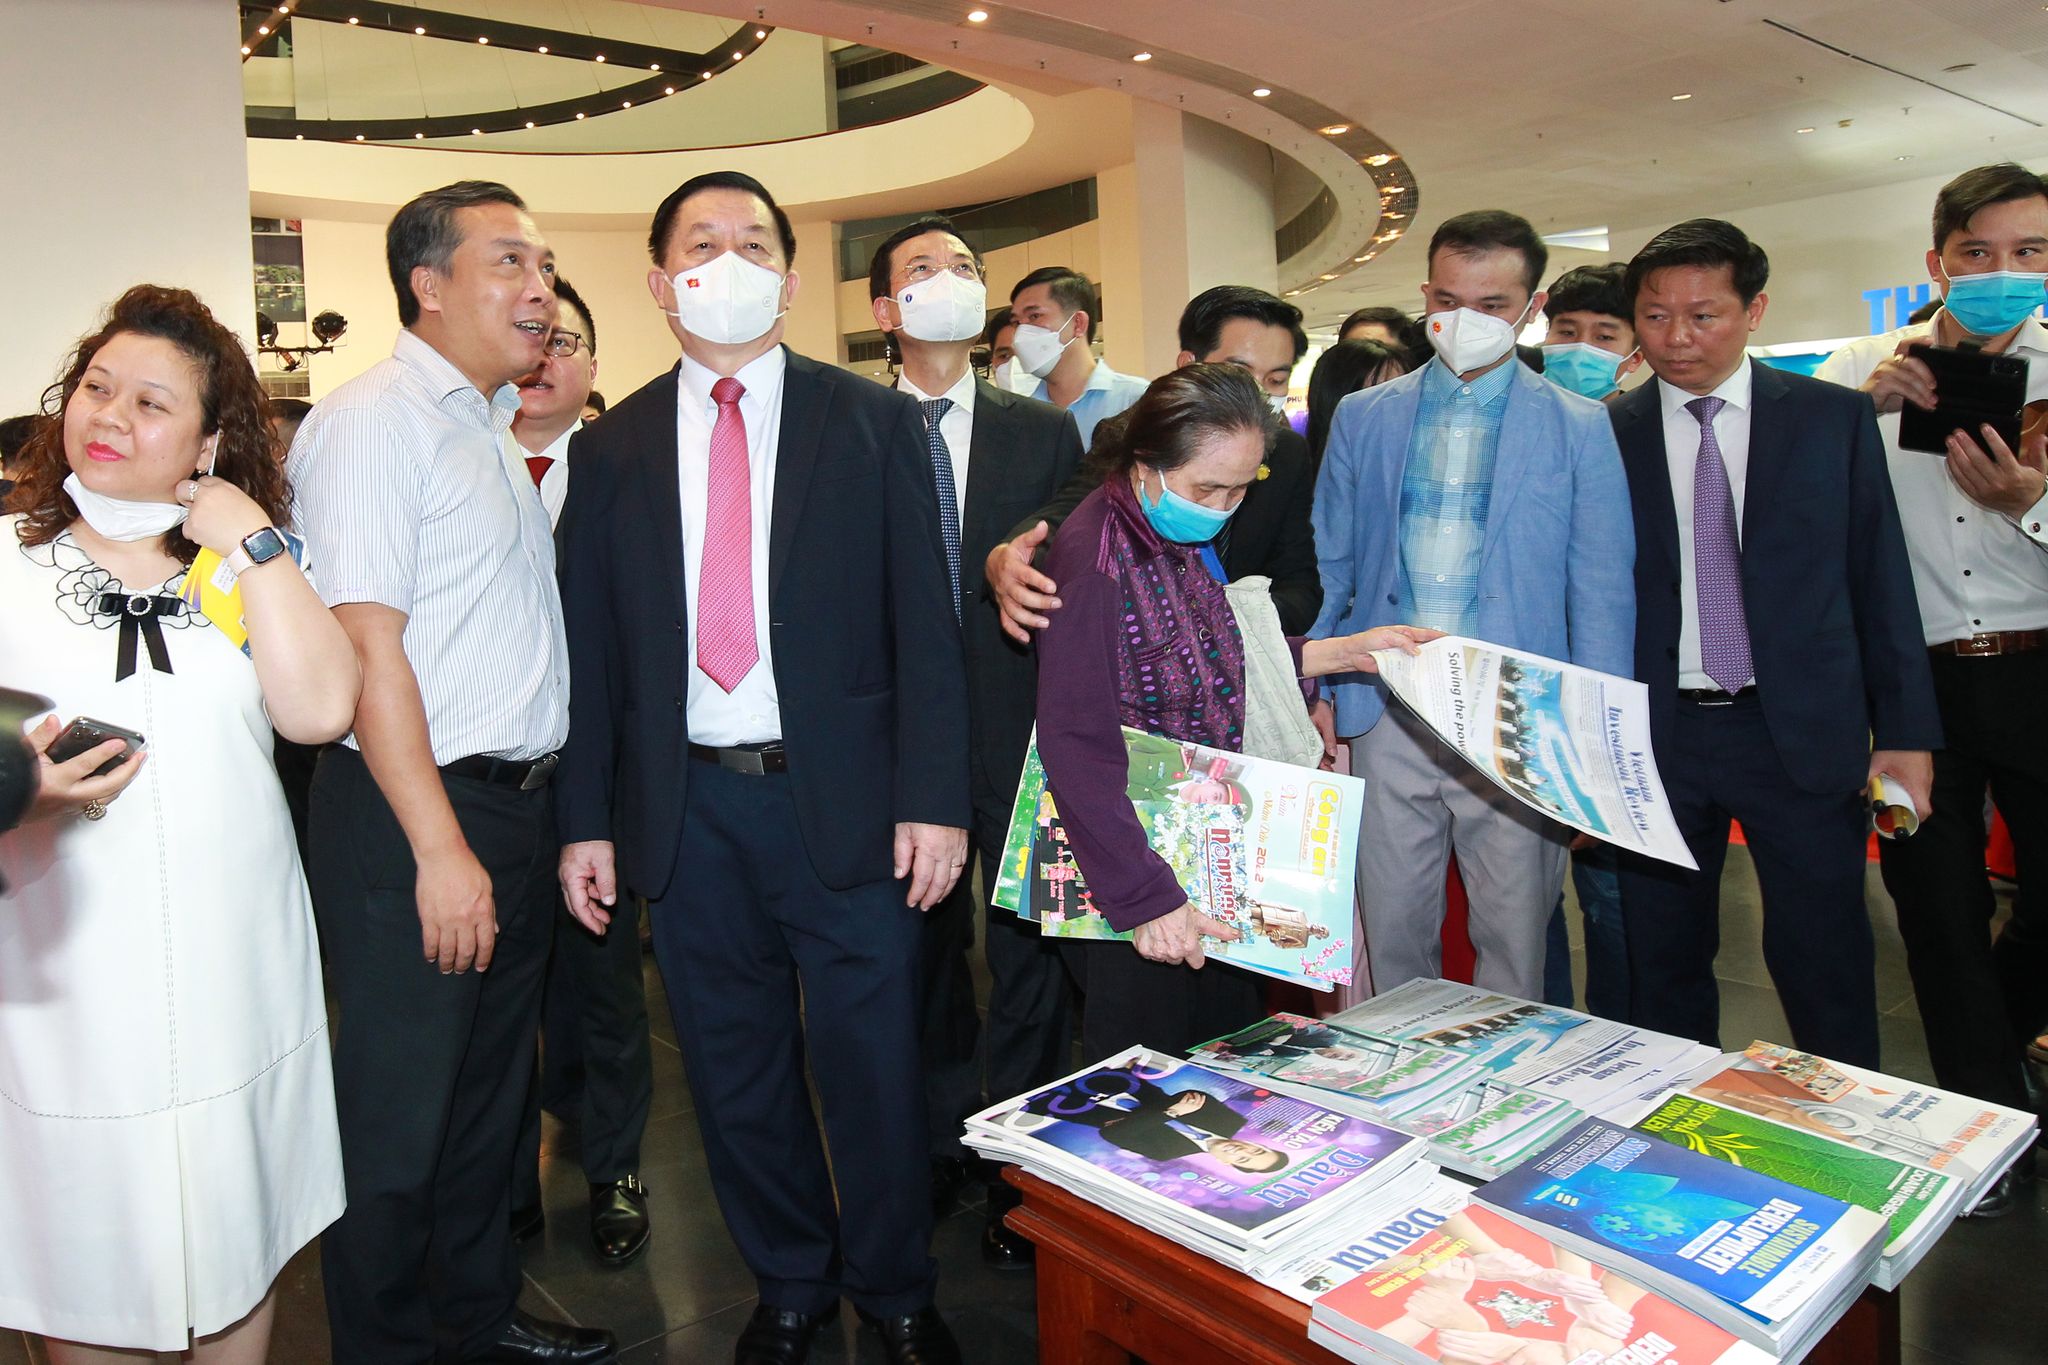 Đồng chí Nguyễn Trọng Nghĩa cùng các đại biểu tới thăm gian hàng của báo Đầu Tư tại hội báo.